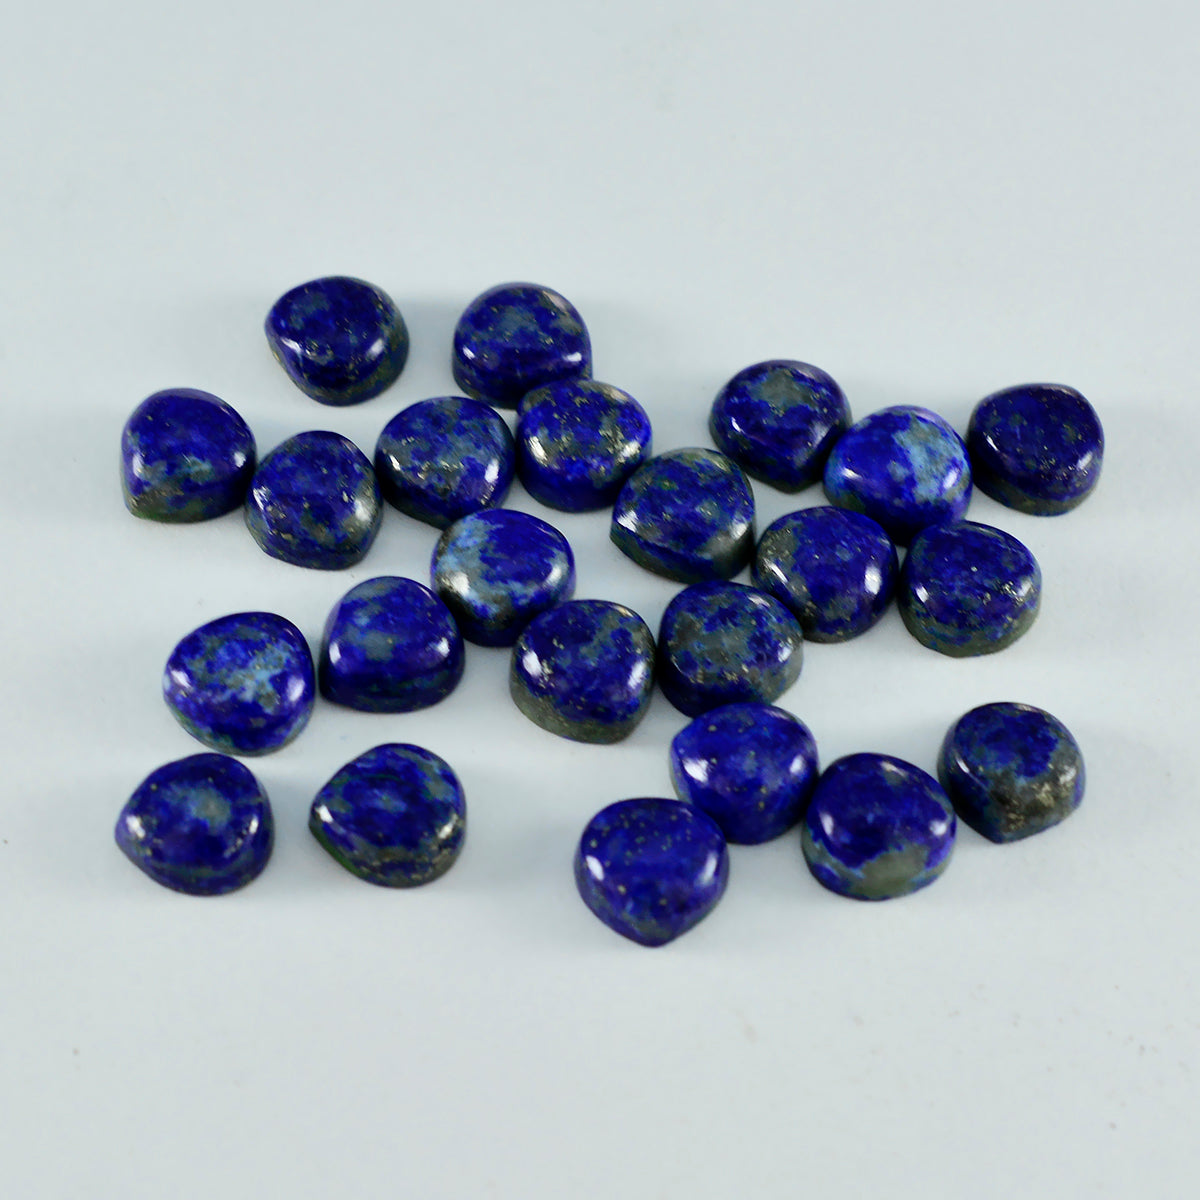 Riyogems 1 cabochon lapis-lazuli bleu en forme de cœur 4 x 4 mm, une pierre précieuse de qualité.